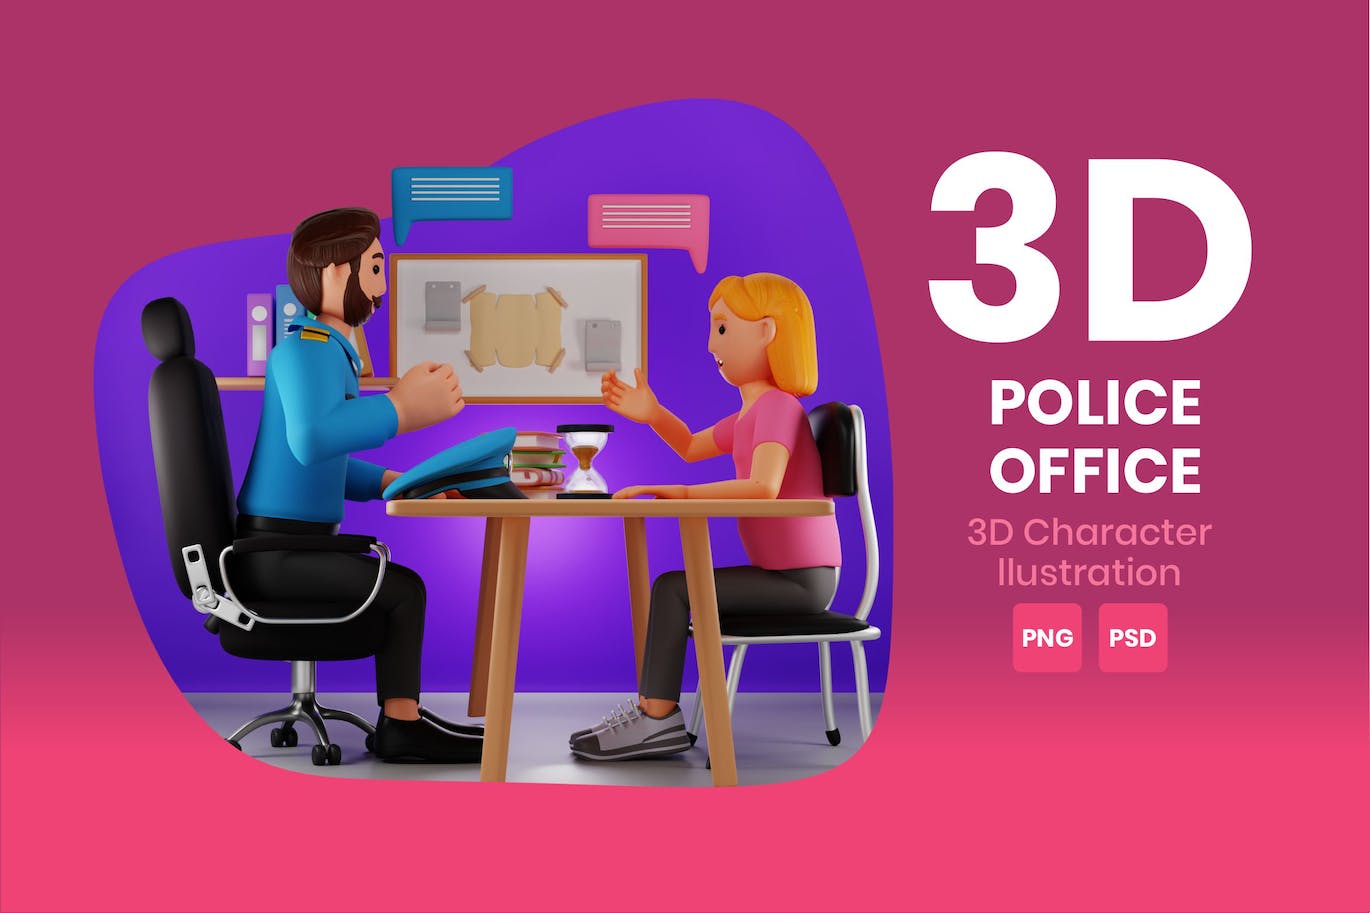 警察办公室3D角色插画素材 Police Office 3D Character Illustration 图片素材 第1张